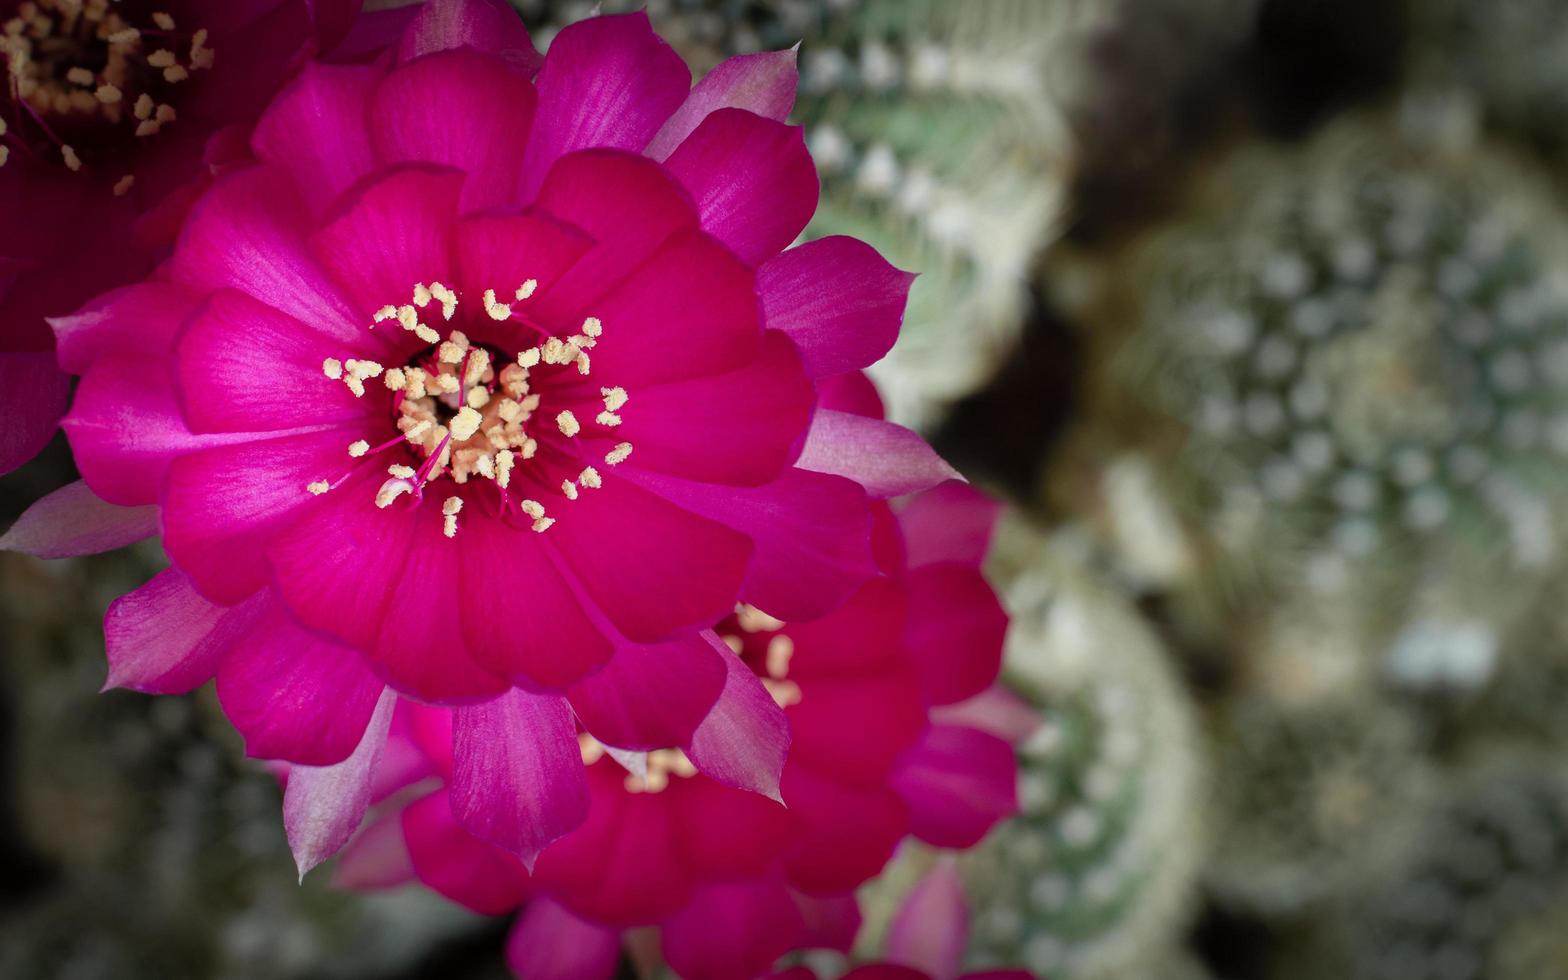 flor com pétalas rosa frescas é uma flor de uma espécie de cacto lobivia  com estames